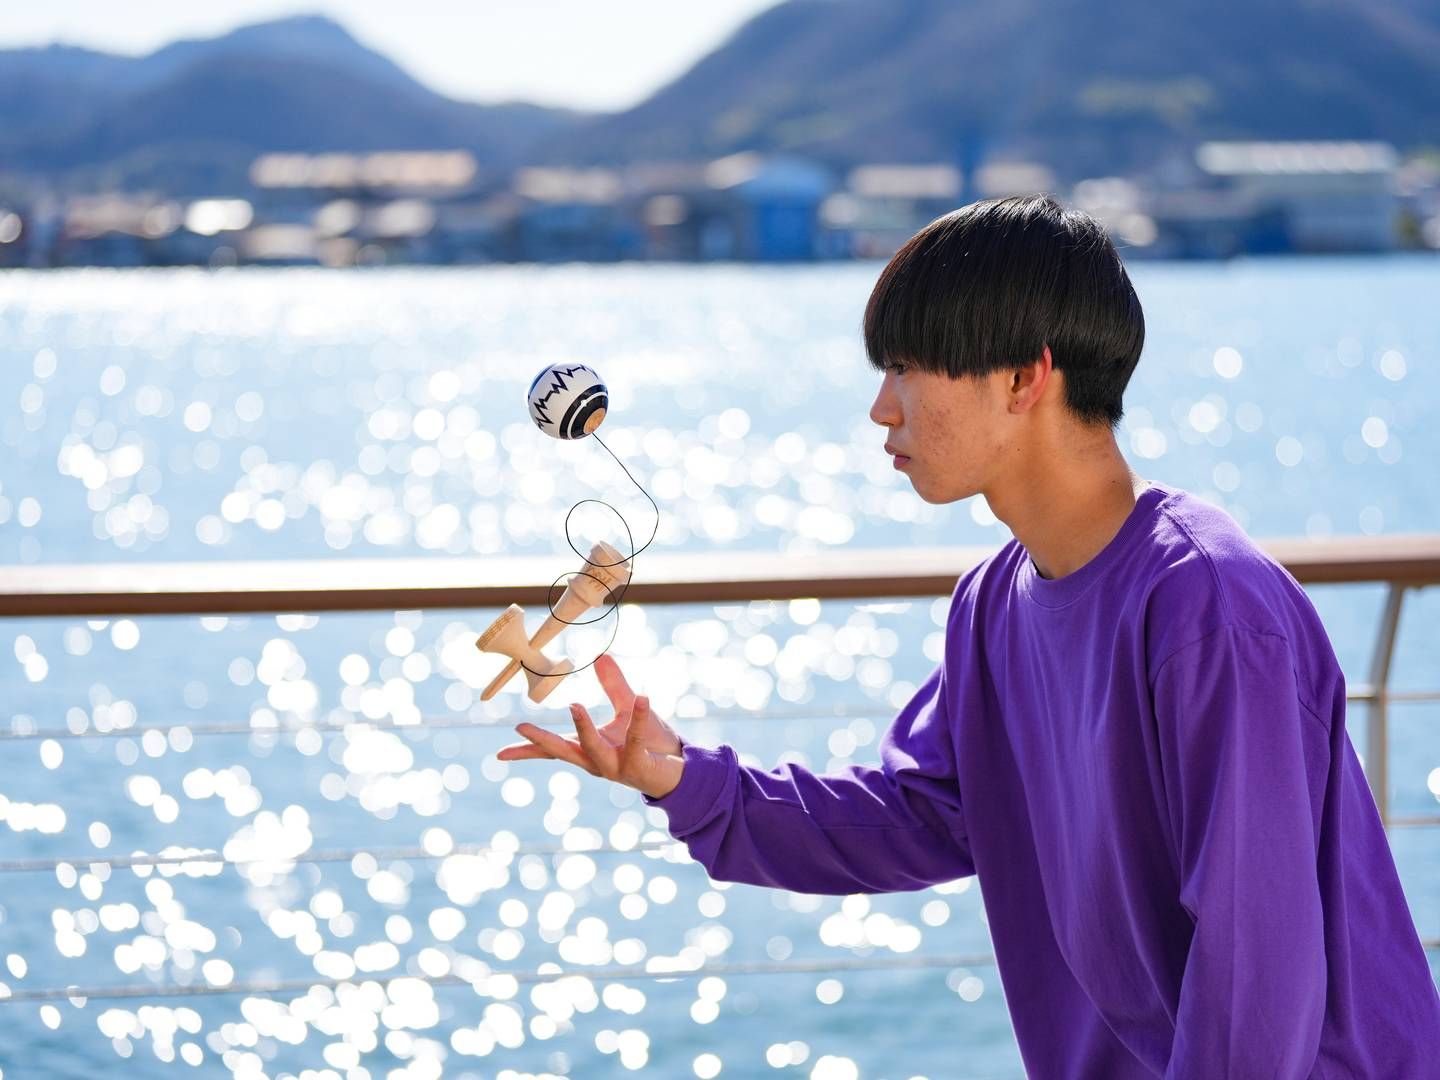 Det japanske jonglørspil kendama er især populært blandt unge og i Asien. | Foto: Toru Hanai/AP/Ritzau Scanpix